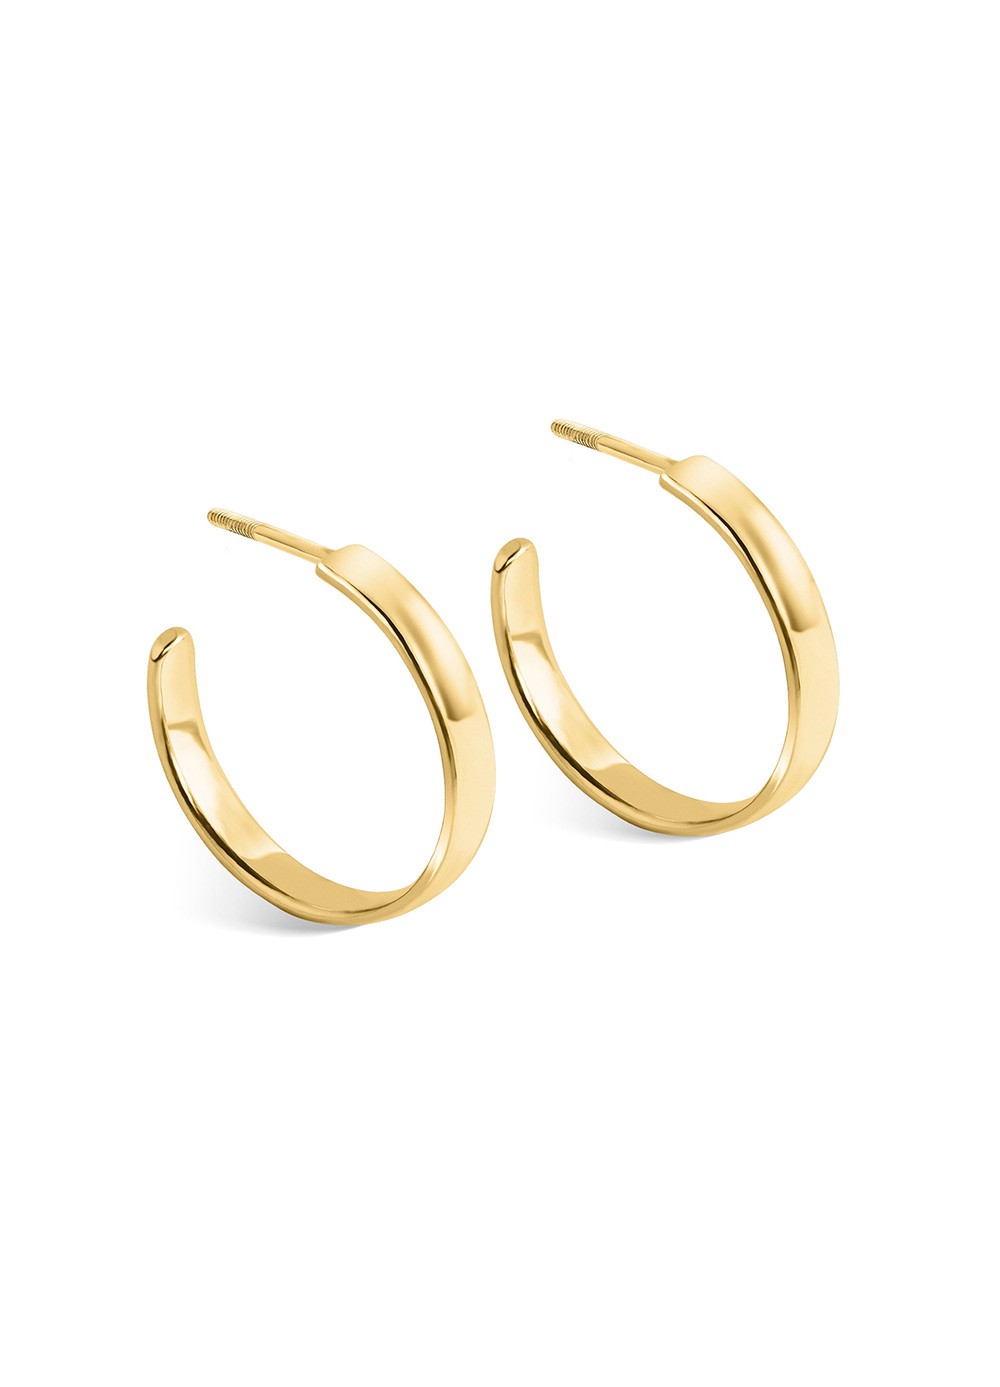 Half-hoop earrings